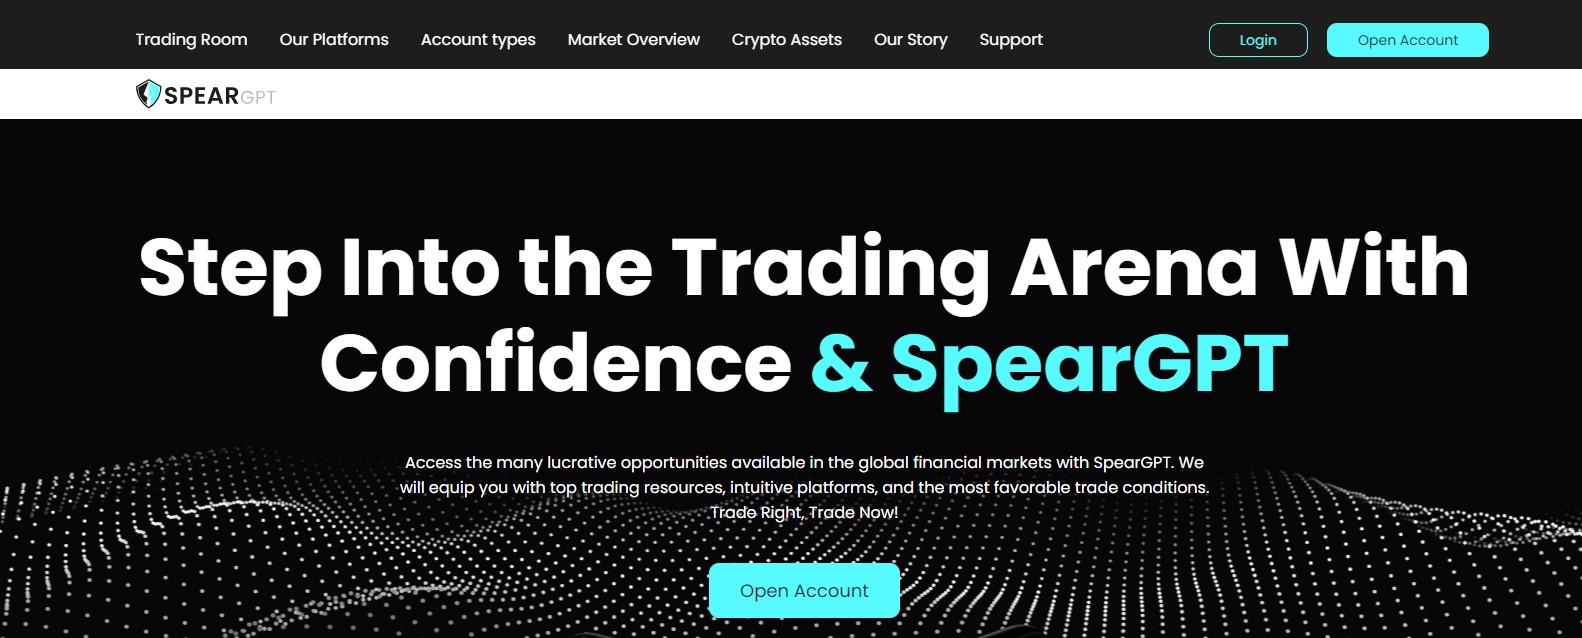 SpearGPT trading offer